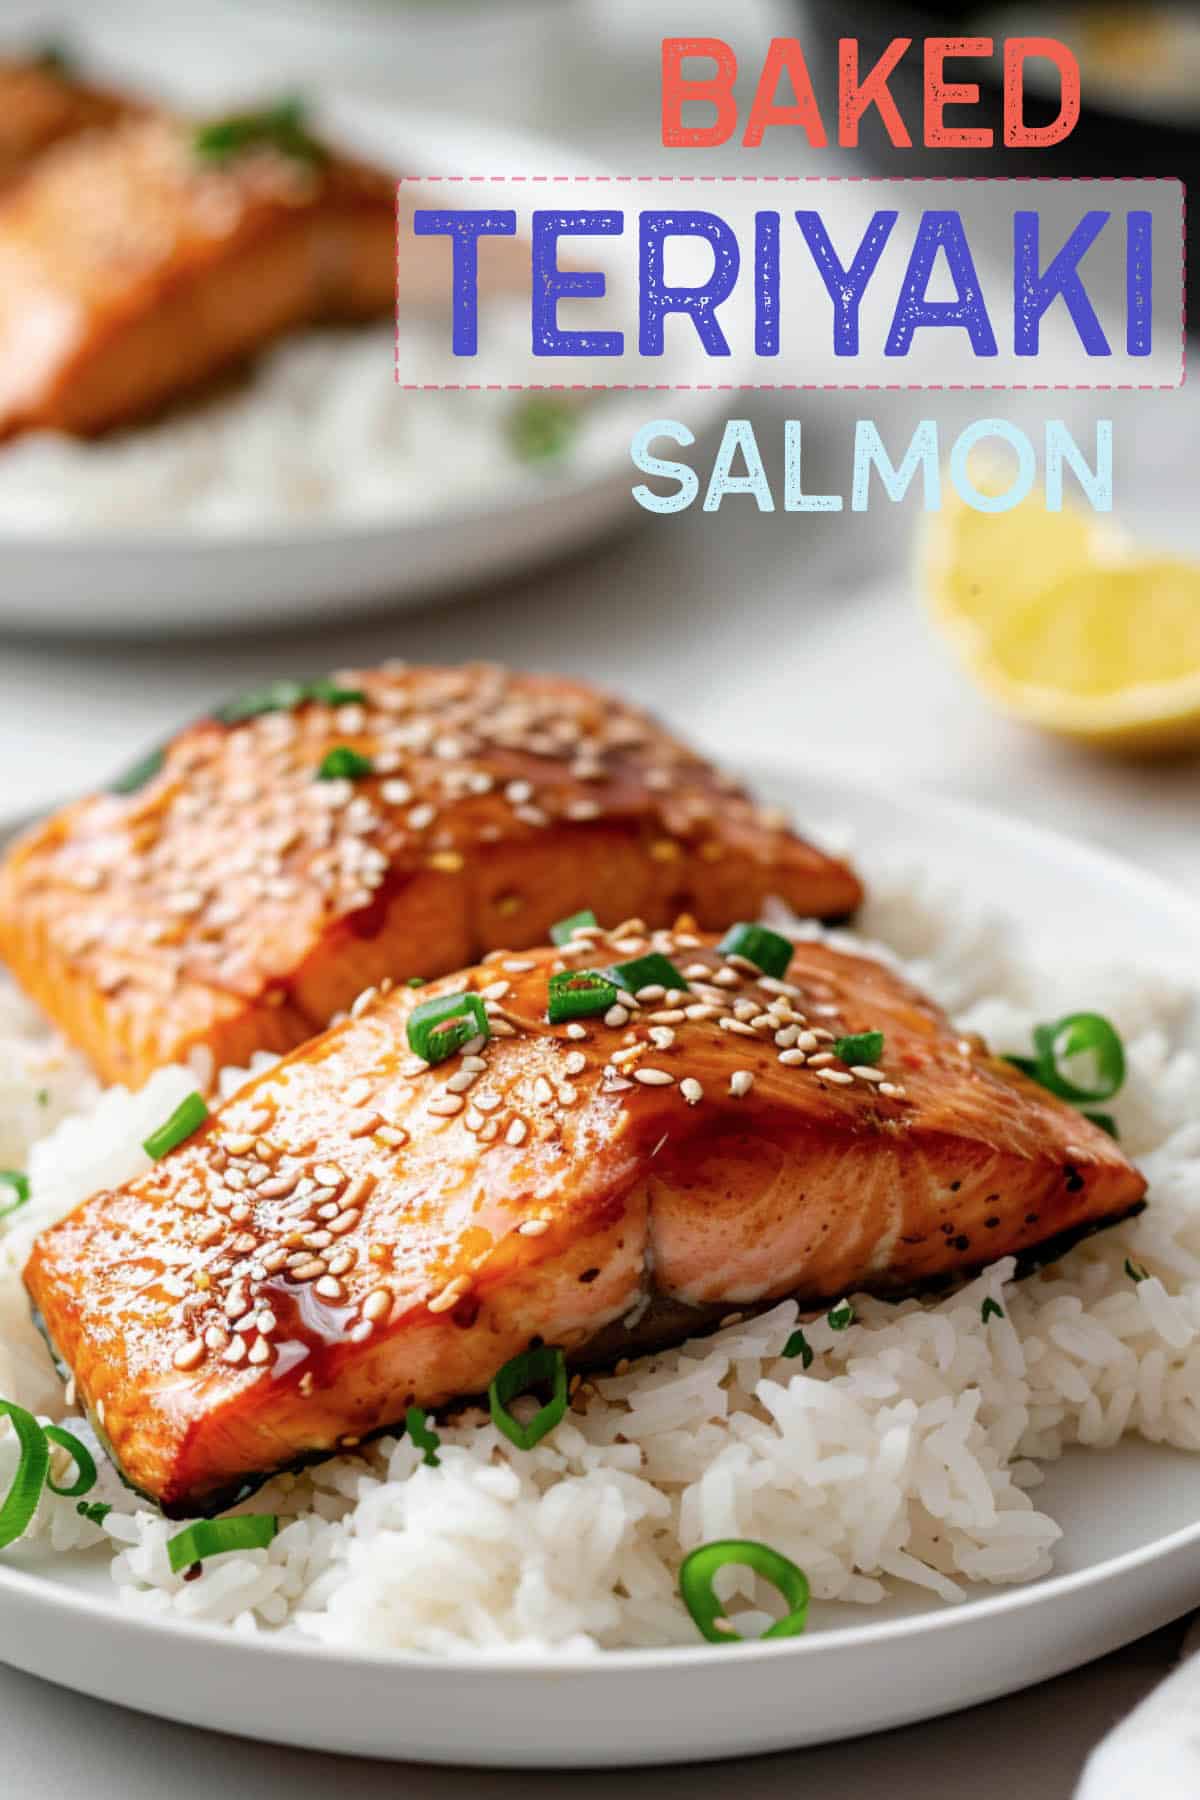 Crispy baked Teriyaki salmon, flavorful and enjoyable to prepare and eat.